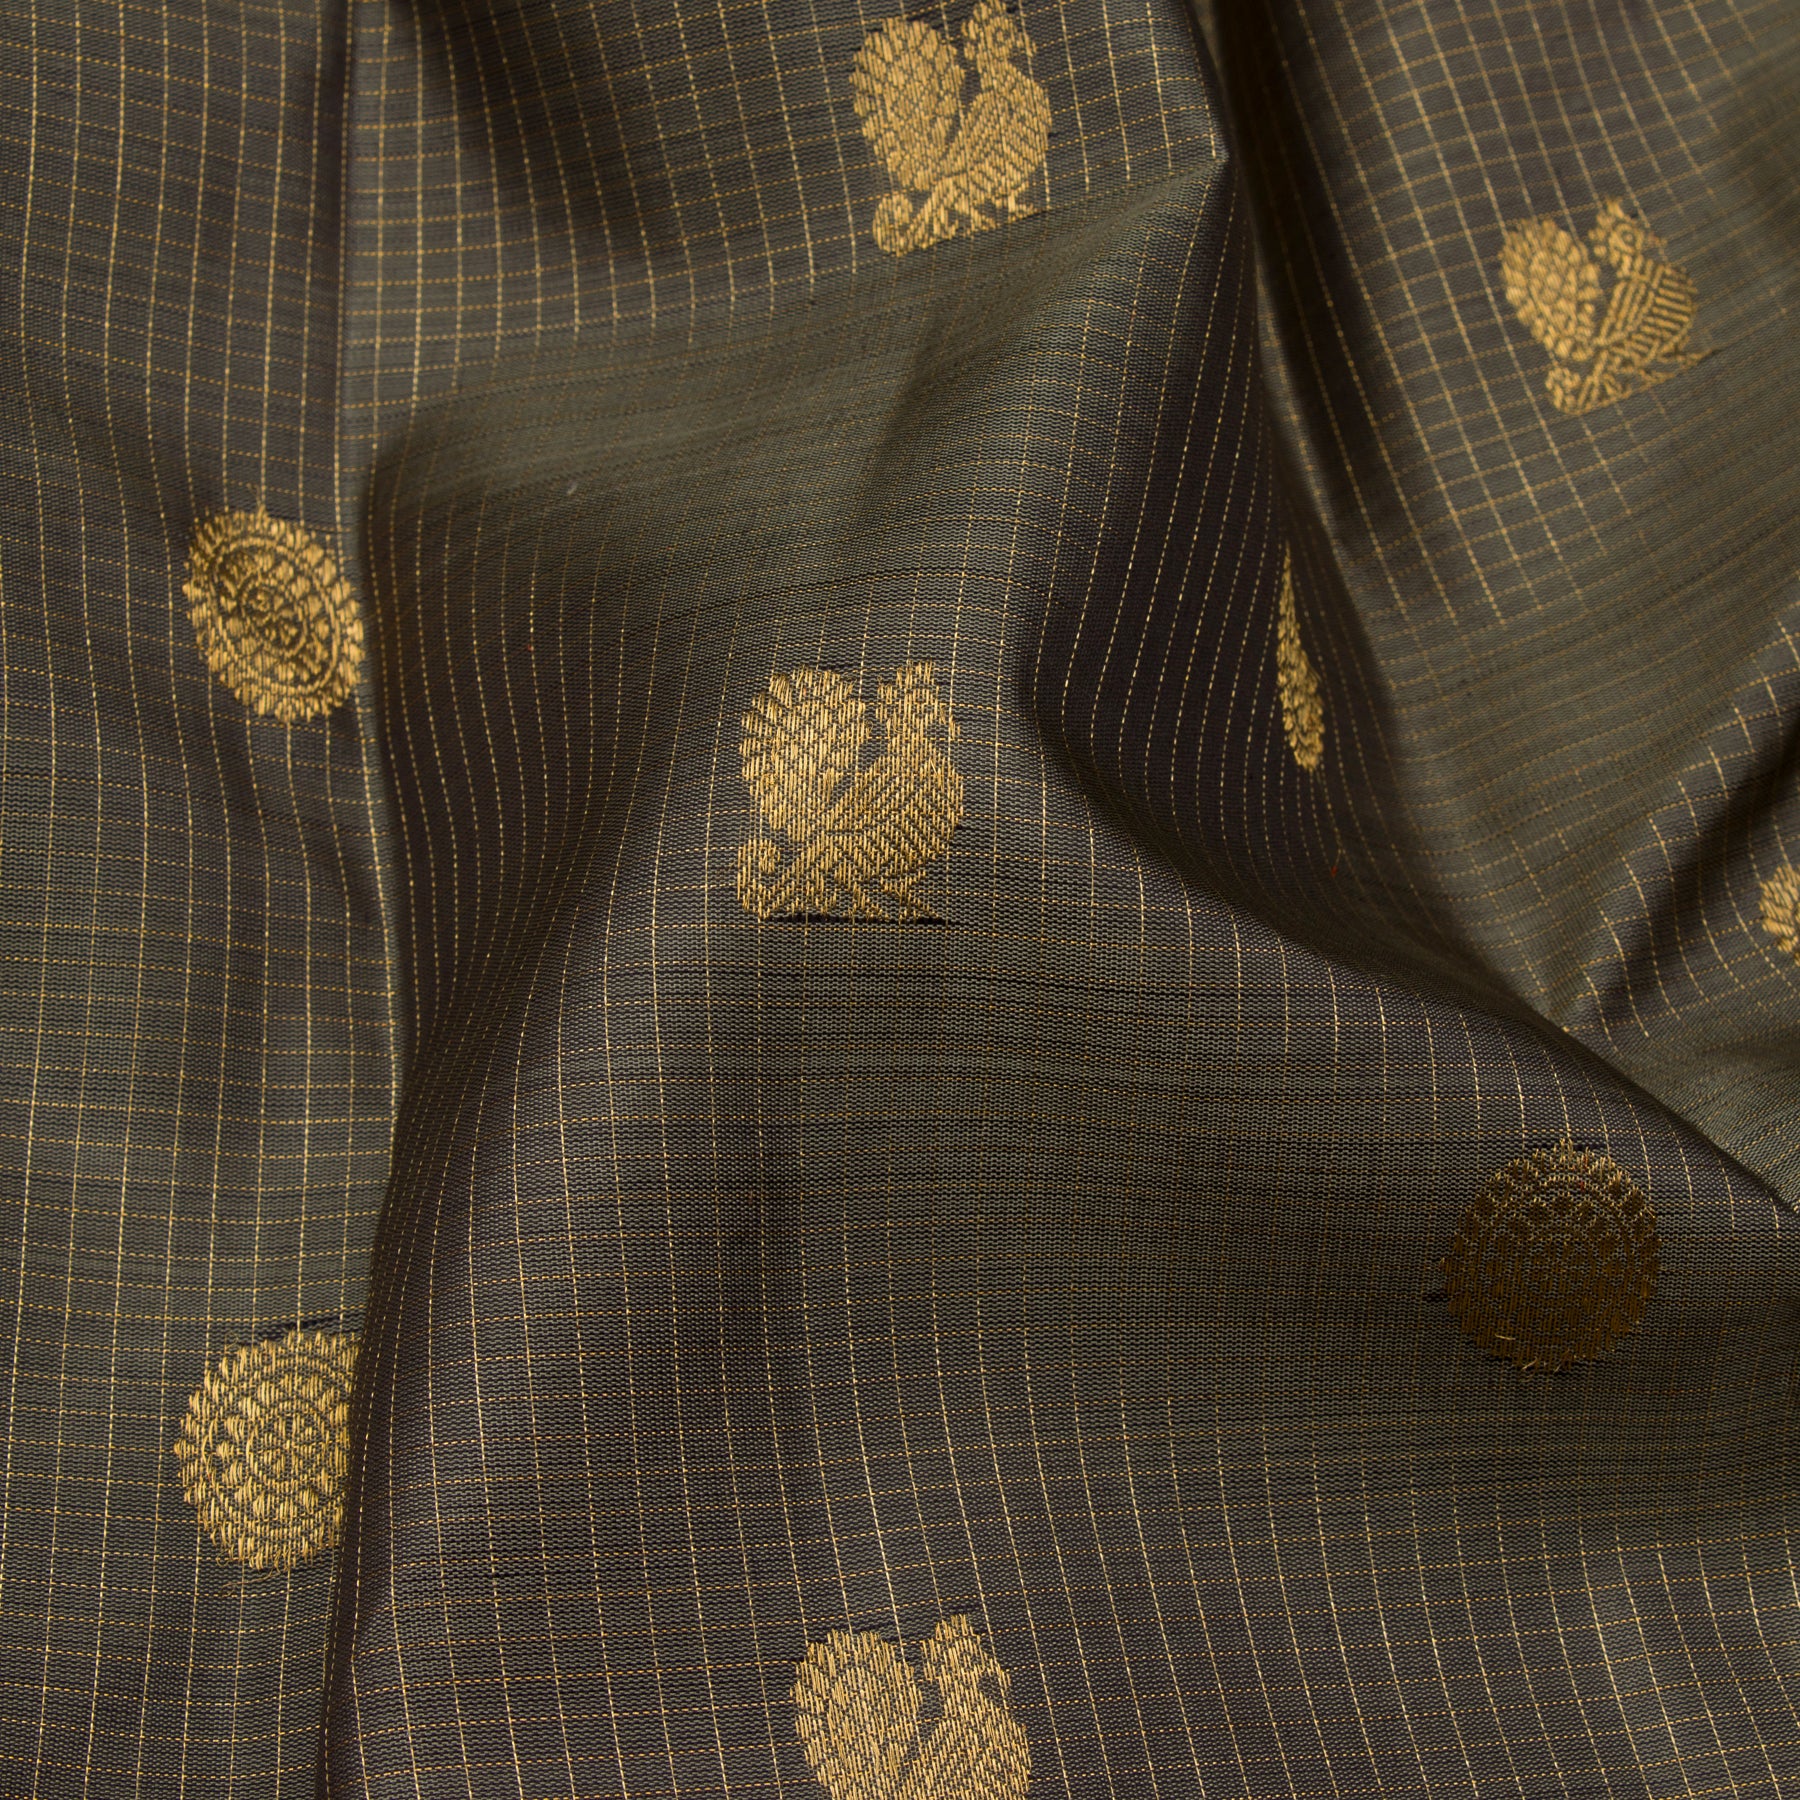 Kanakavalli Kanjivaram Silk Sari 23-599-HS001-13940 - Fabric View